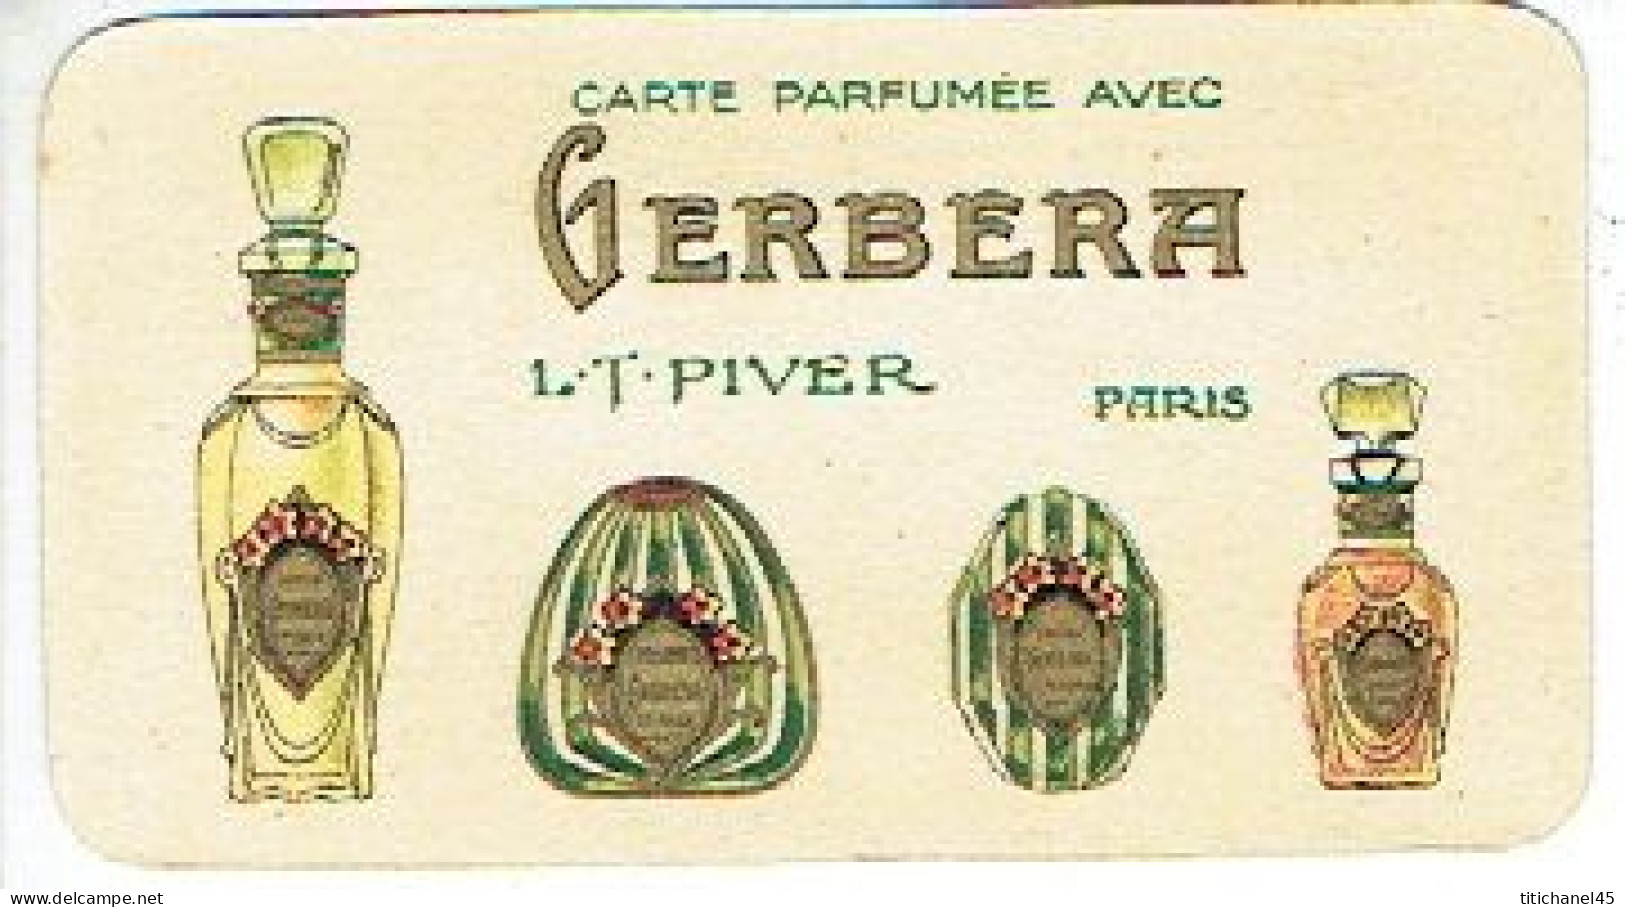 Peu Courante Carte Parfum GERBERA De L.T. PIVER - Calendrier De 1924 Au Verso - Antiguas (hasta 1960)